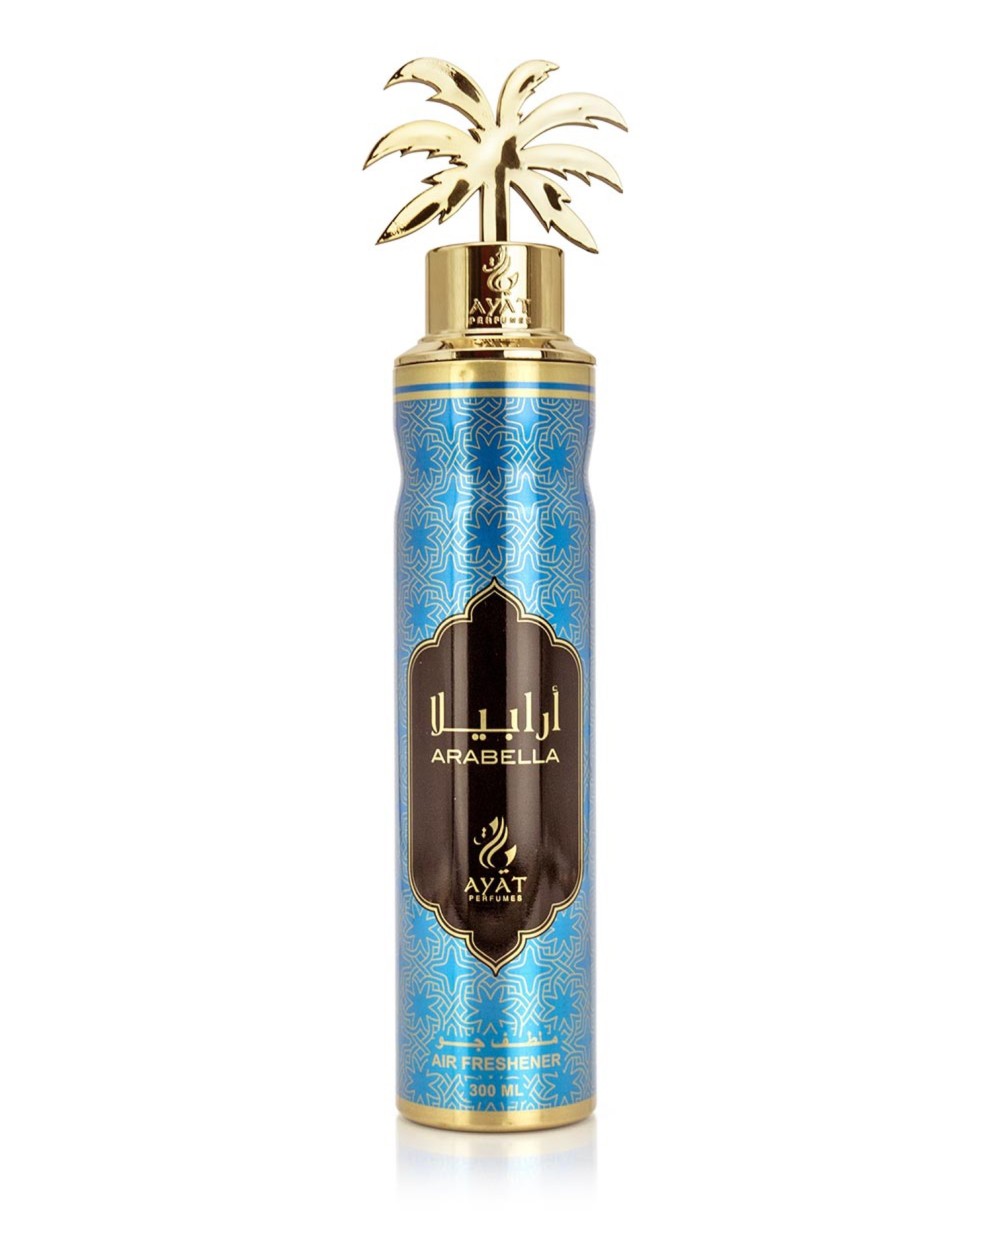 Air Freshener Arabella - Ayat Perfumes